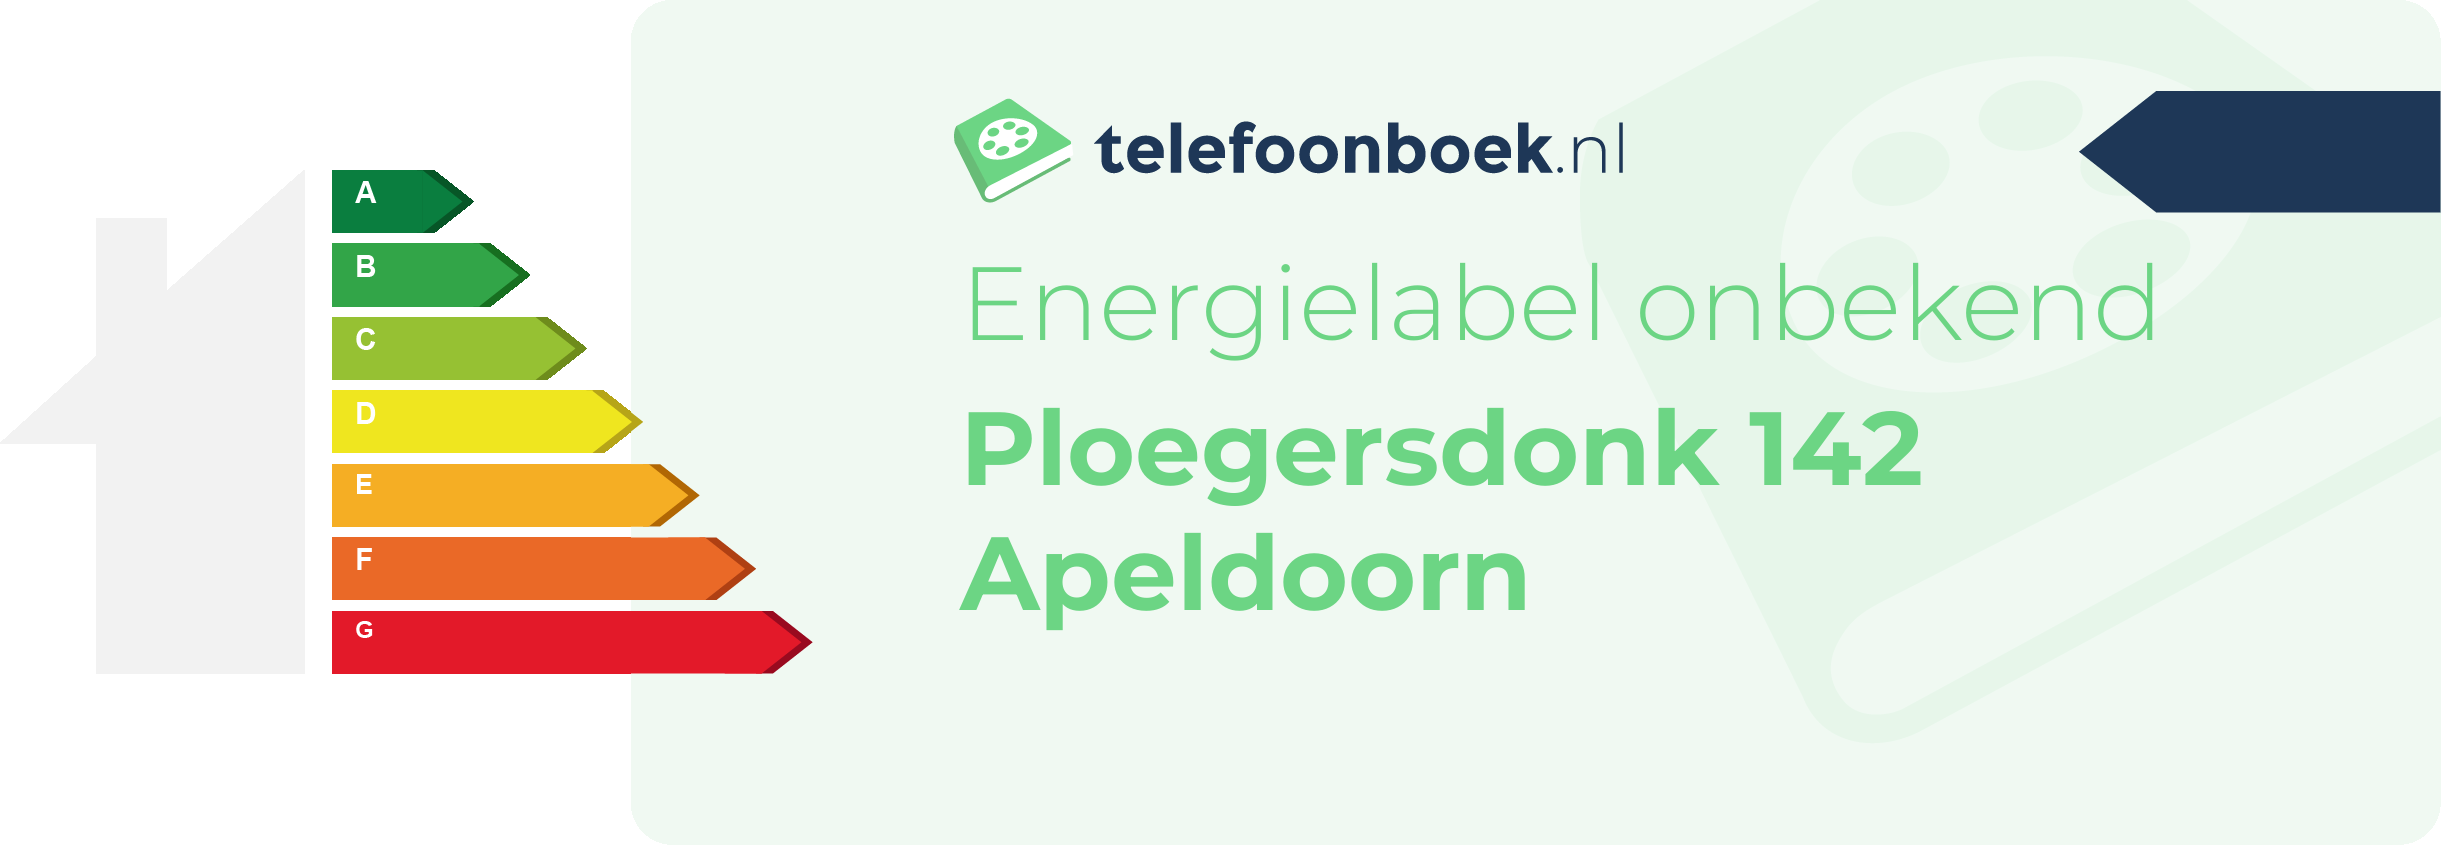 Energielabel Ploegersdonk 142 Apeldoorn